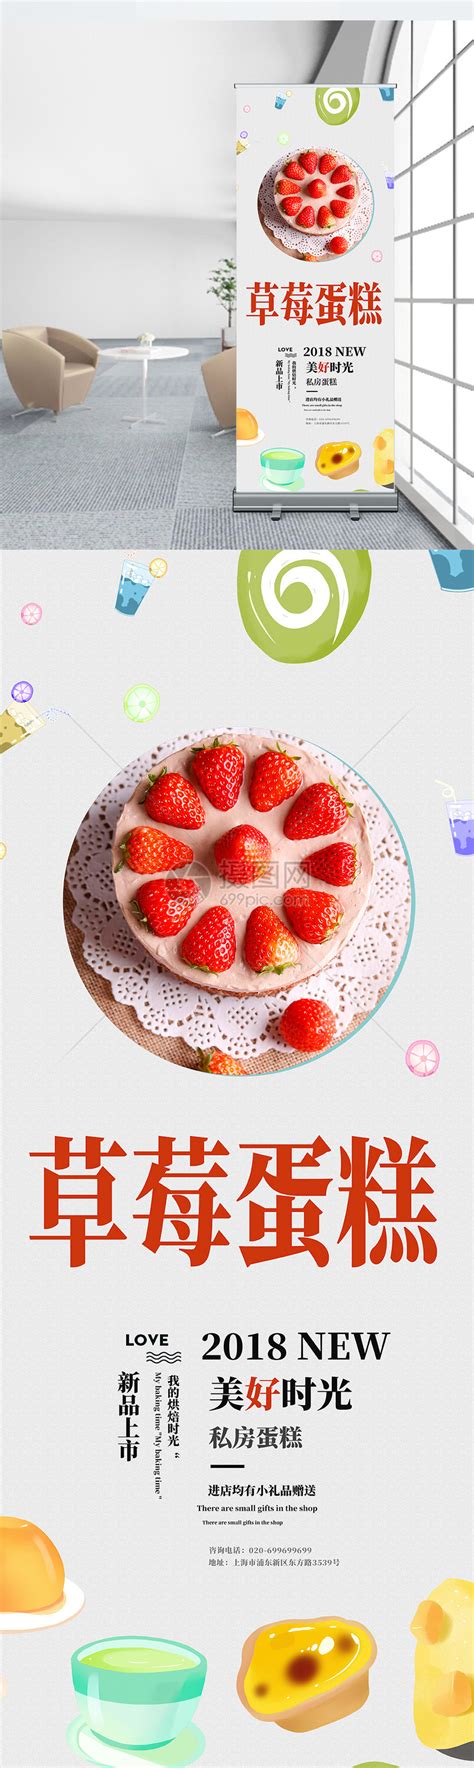 草莓丝绒蛋糕 _经典臻选_蛋糕_味多美官网_蛋糕订购，100%使用天然奶油